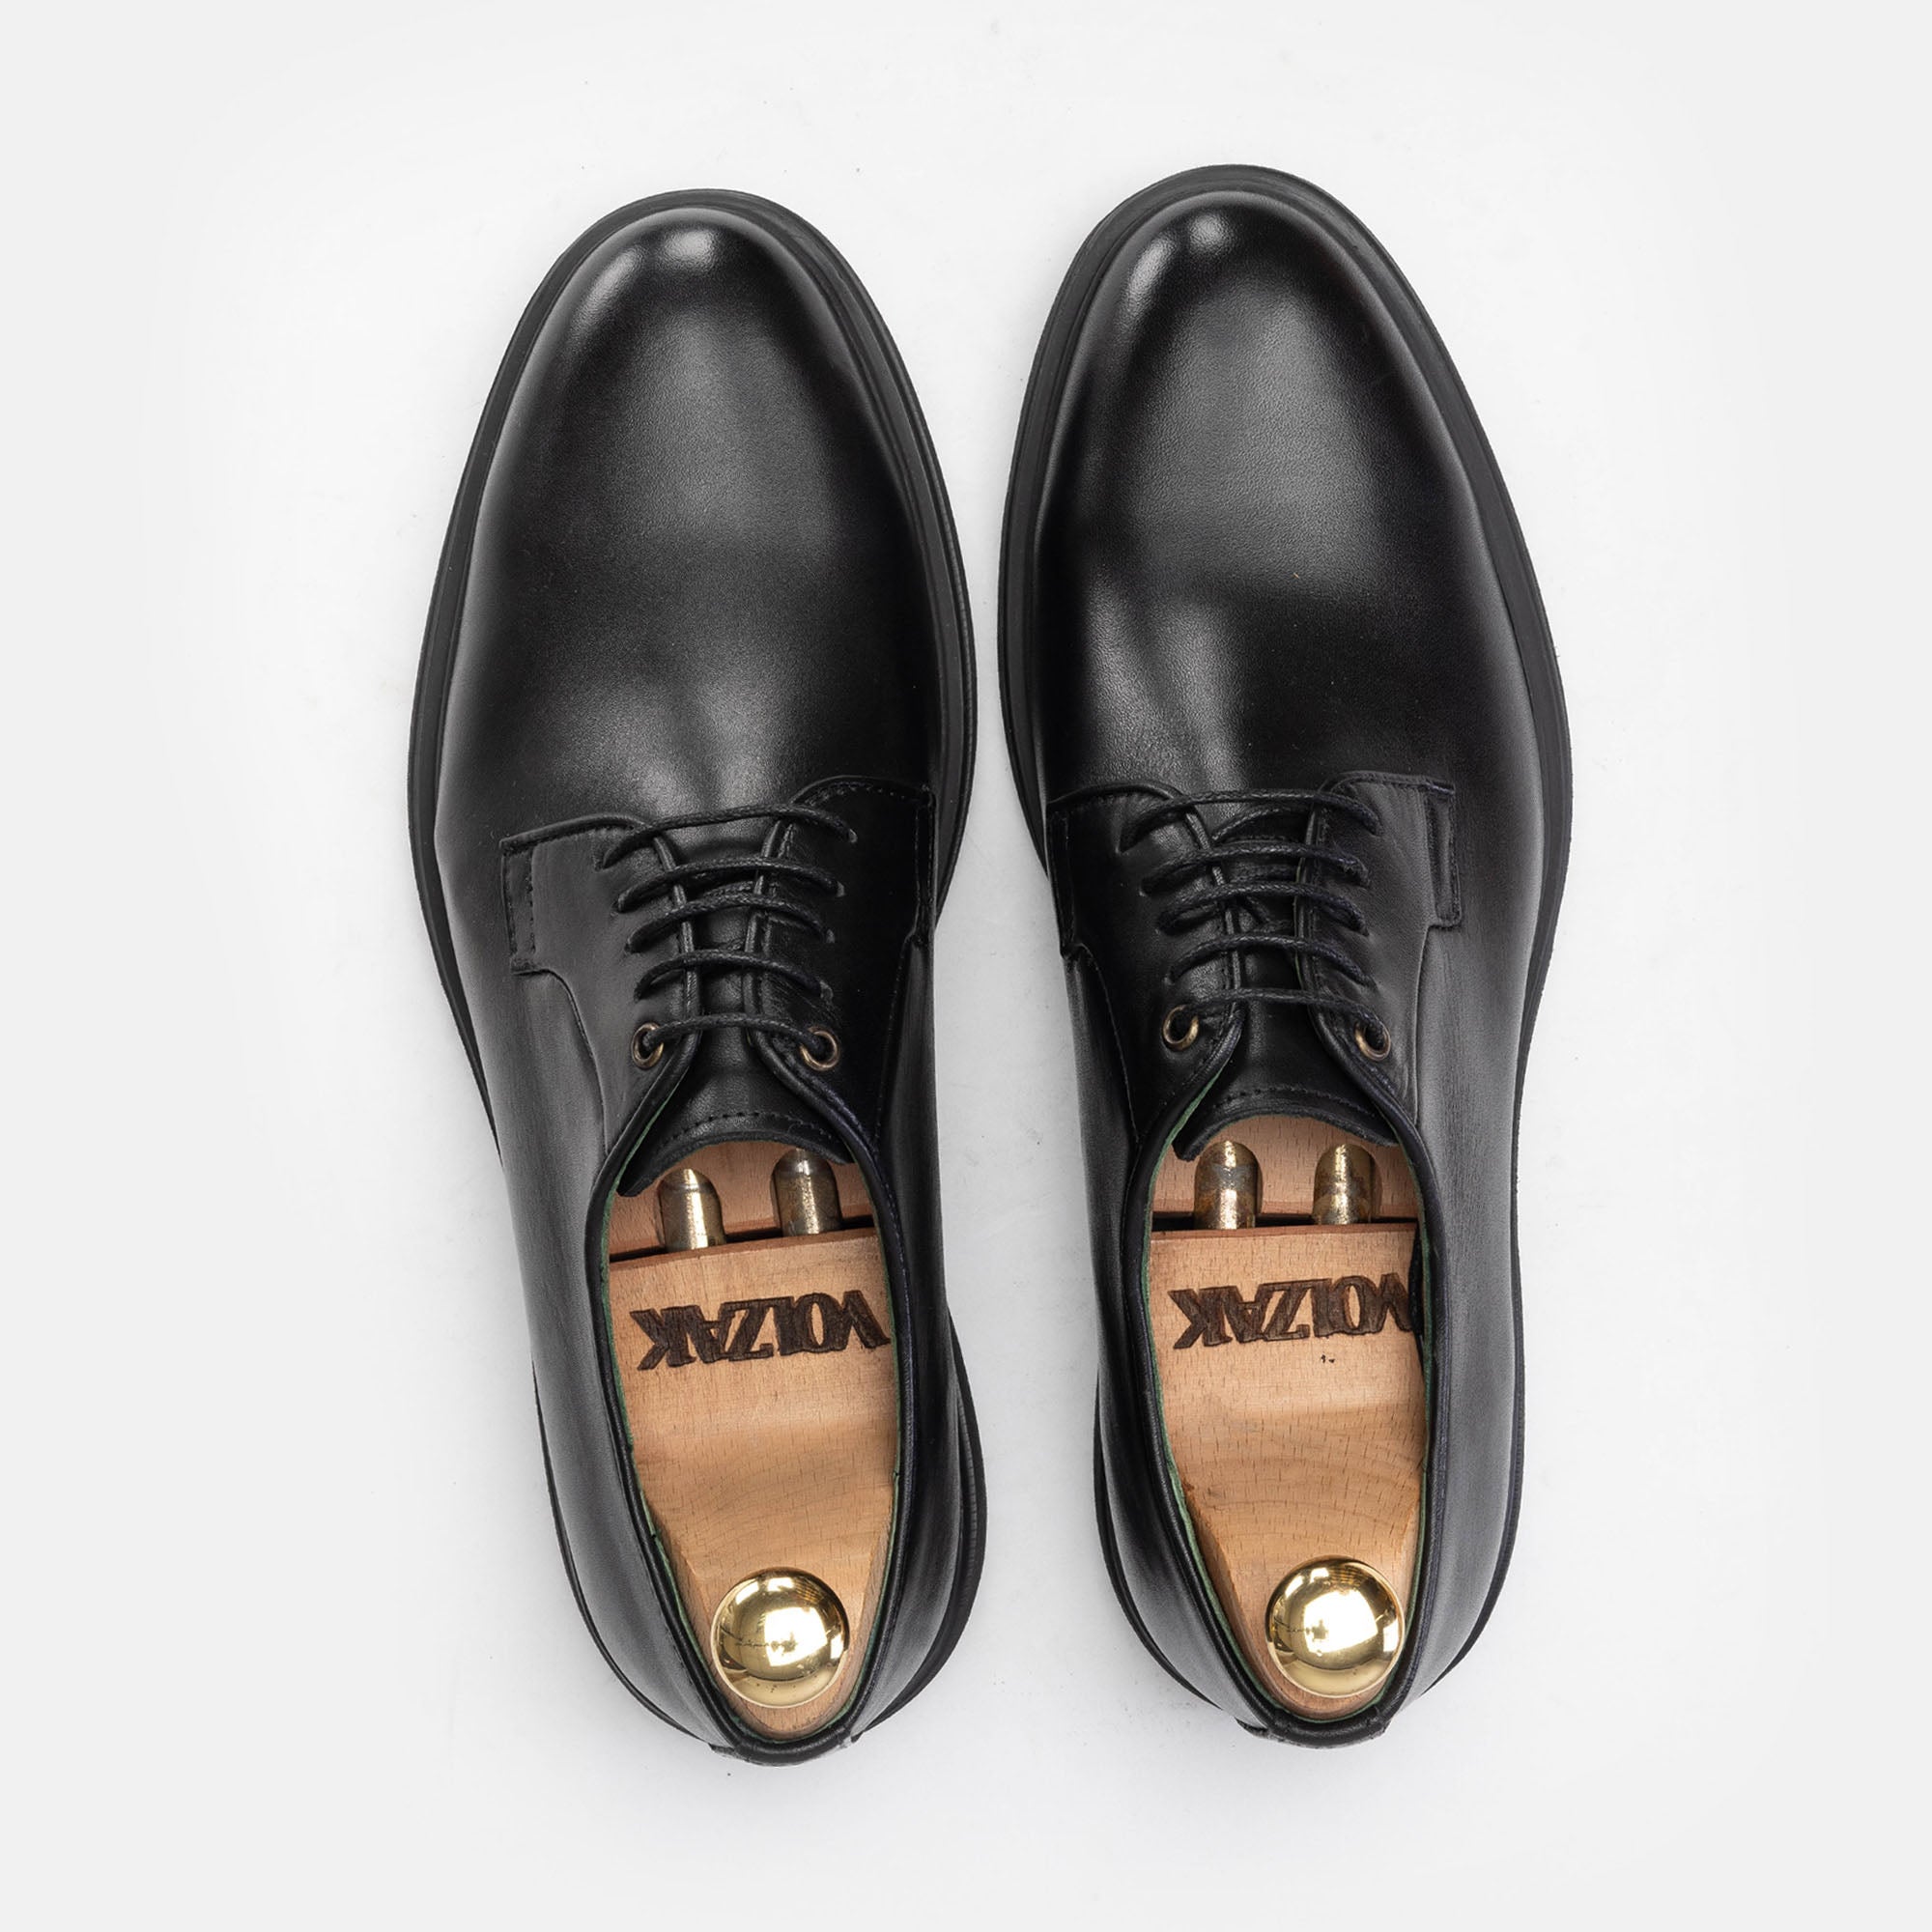 '336 Chaussure en cuir Noir